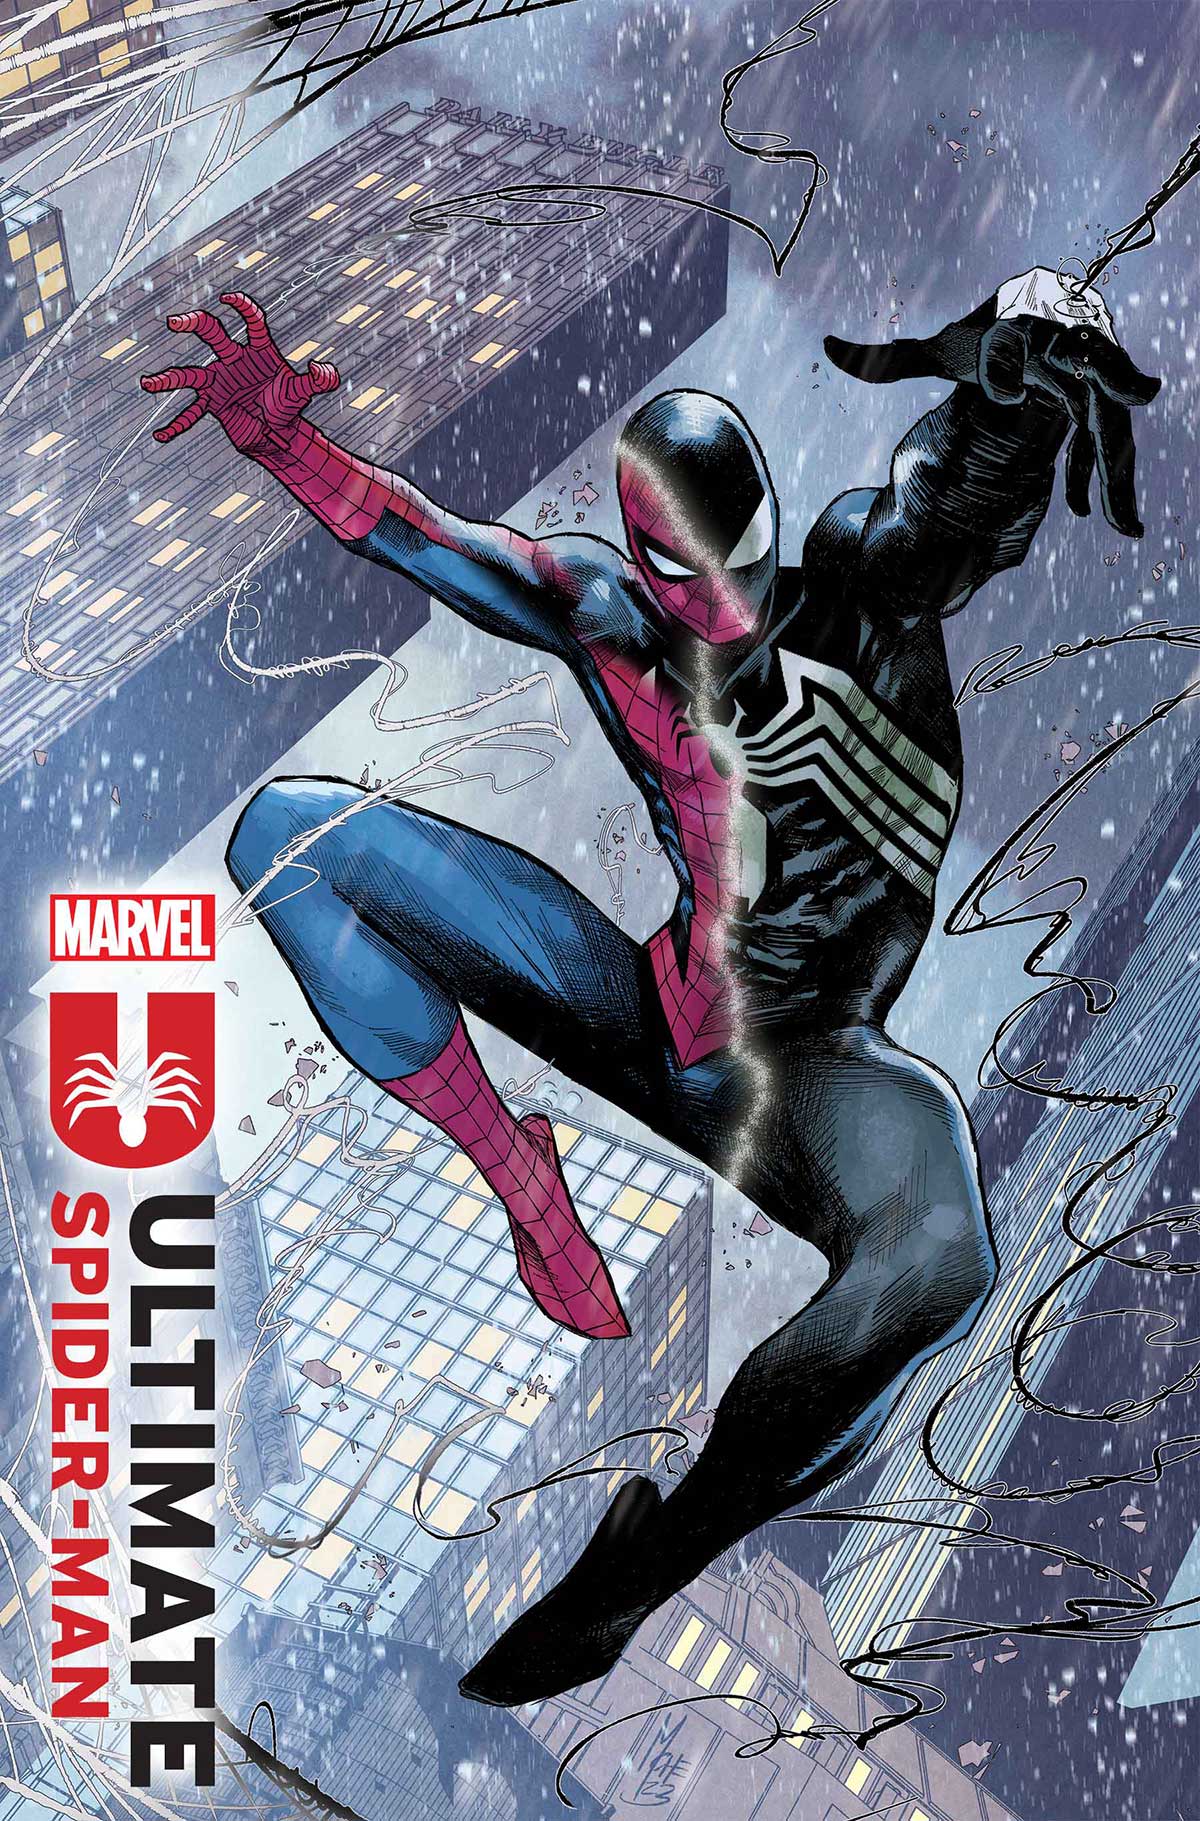 MILES MORALES: SPIDER-MAN #1 Chrissie Zullo Variant LTD To